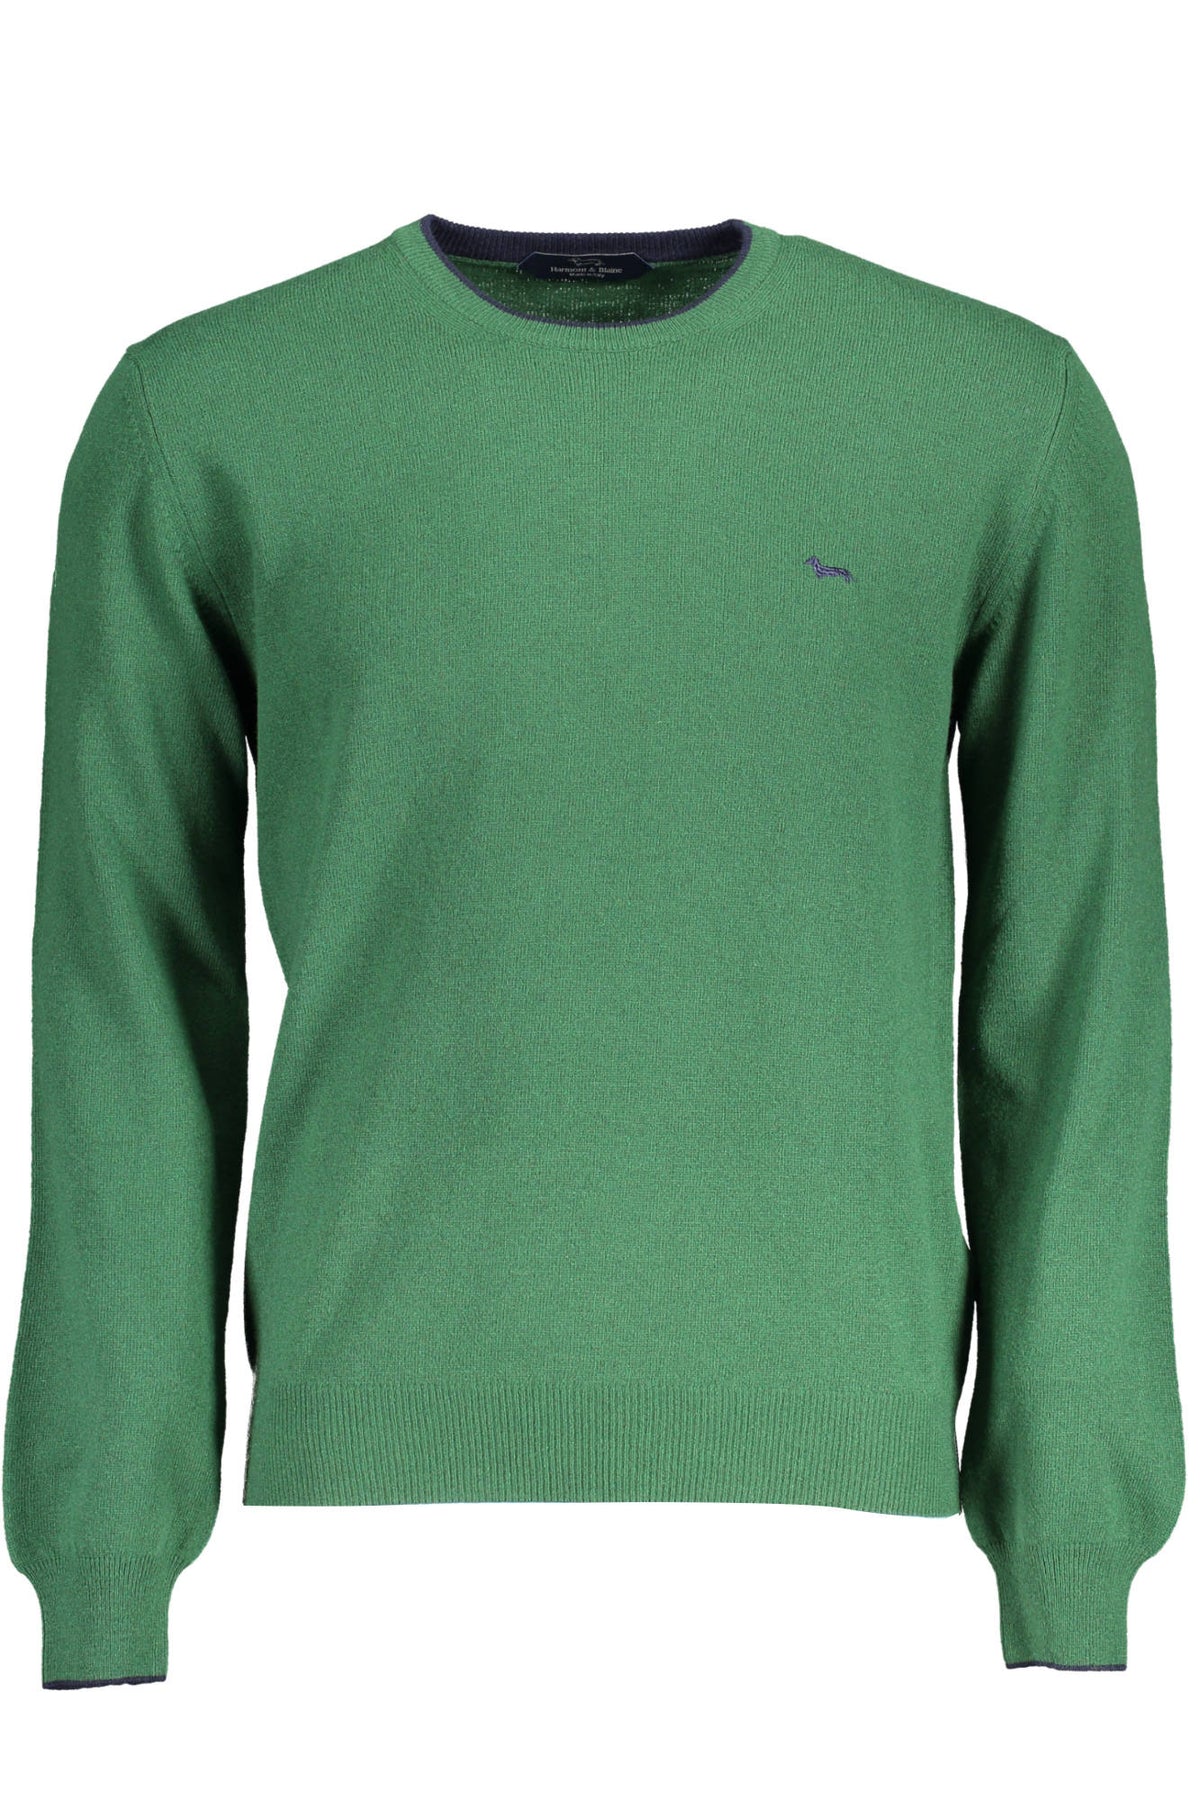 HARMONT & BLAINE Herren Rundhals Pullover Sweatshirt mit langen Ärmeln